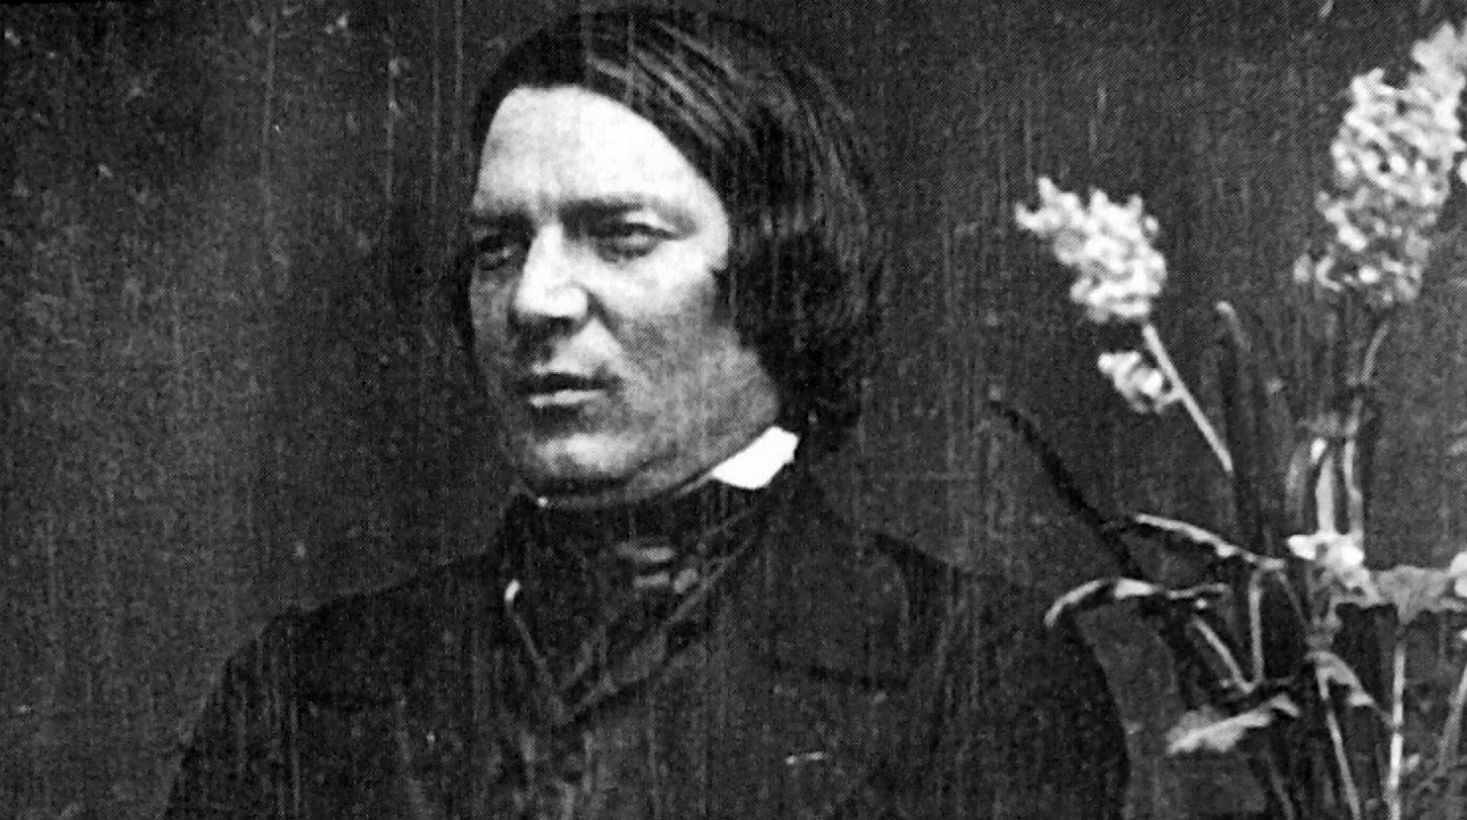 Robert Schumann (1810-1856) musikagilearen ametsa piano jotzailea izatea zen, eta, anbizioak bultzatuta, gailu berezi bat erabili zuen teknika hobetzeko. Hatzak indartu beharrean betiko lesionatu zituen. 